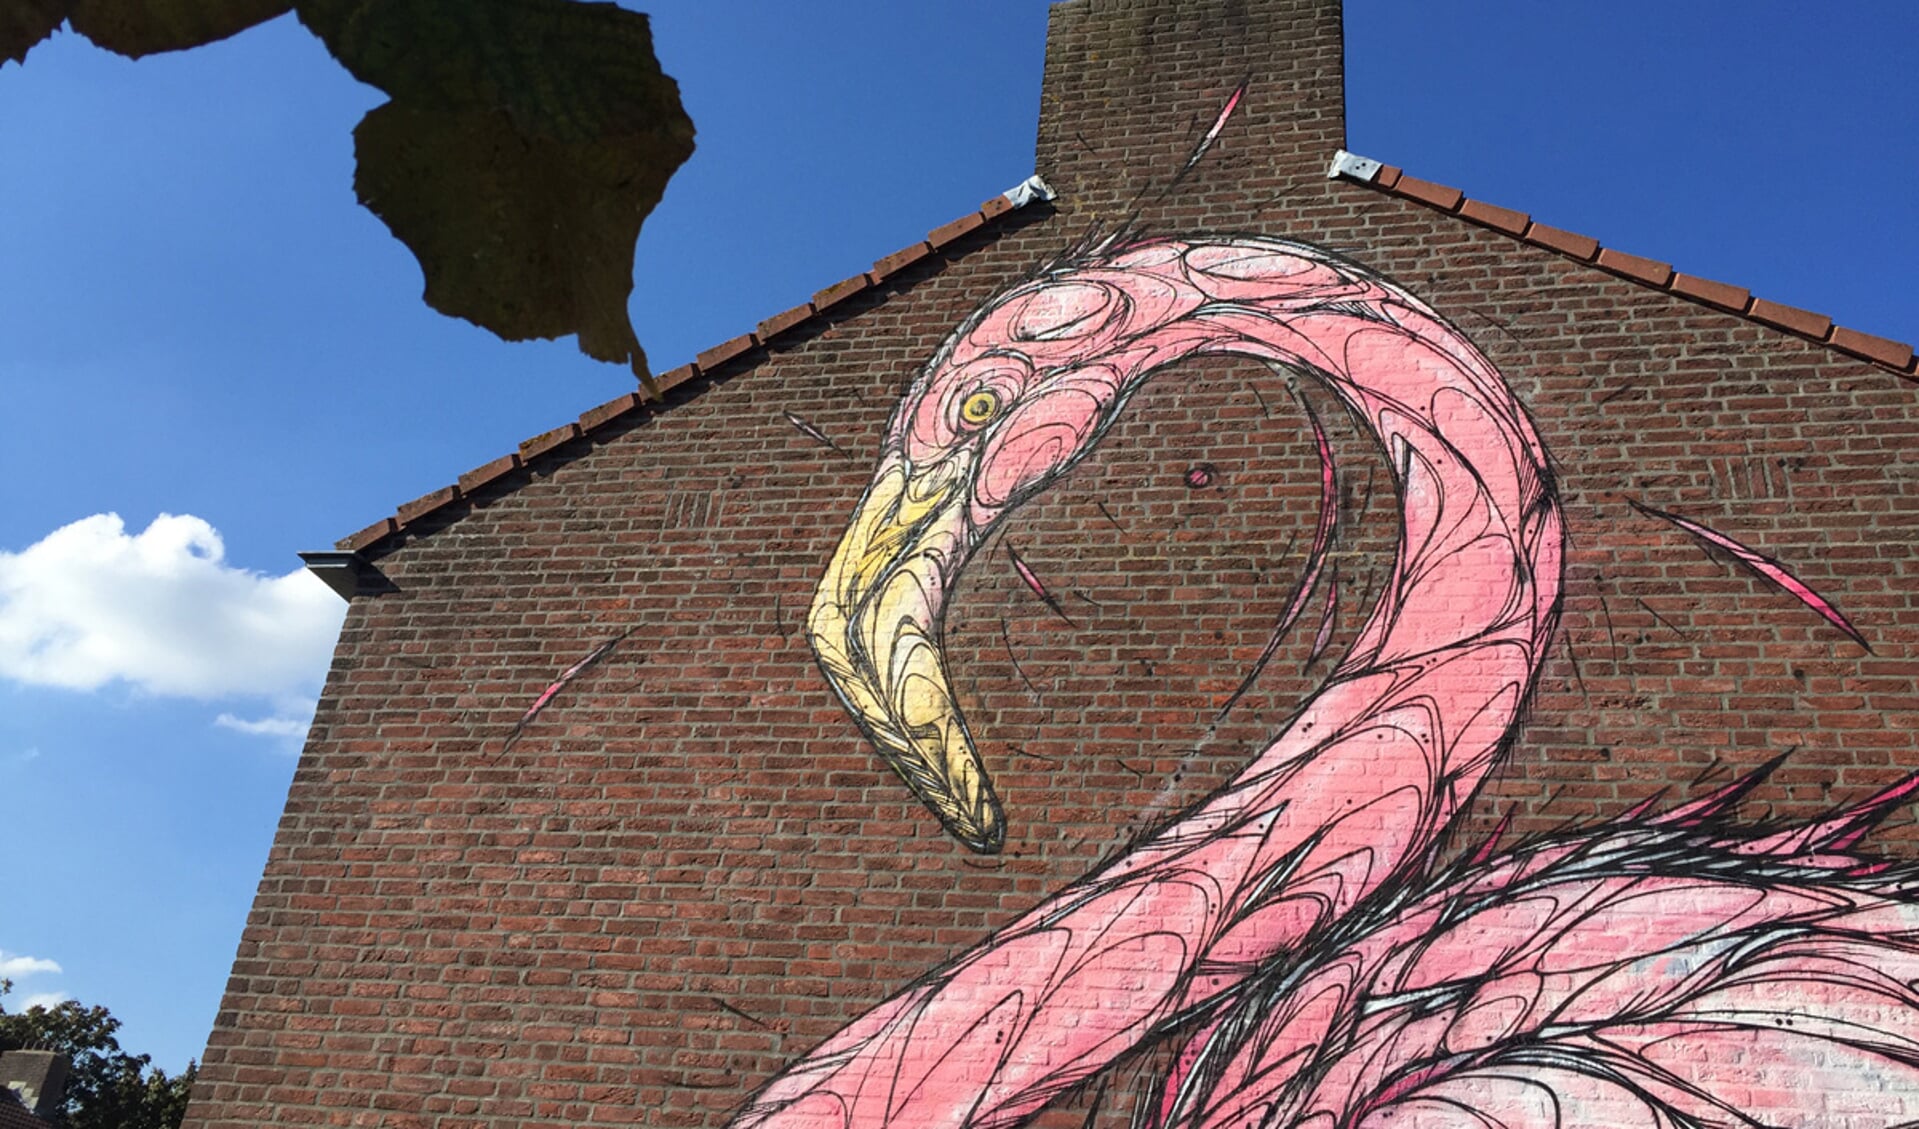 Als onderdeel van de Blind Walls Gallery beschilderde kunstenaar Dzia drie gevels in de Linie. Een toekan, flamingo en zwaan sieren de woningen.